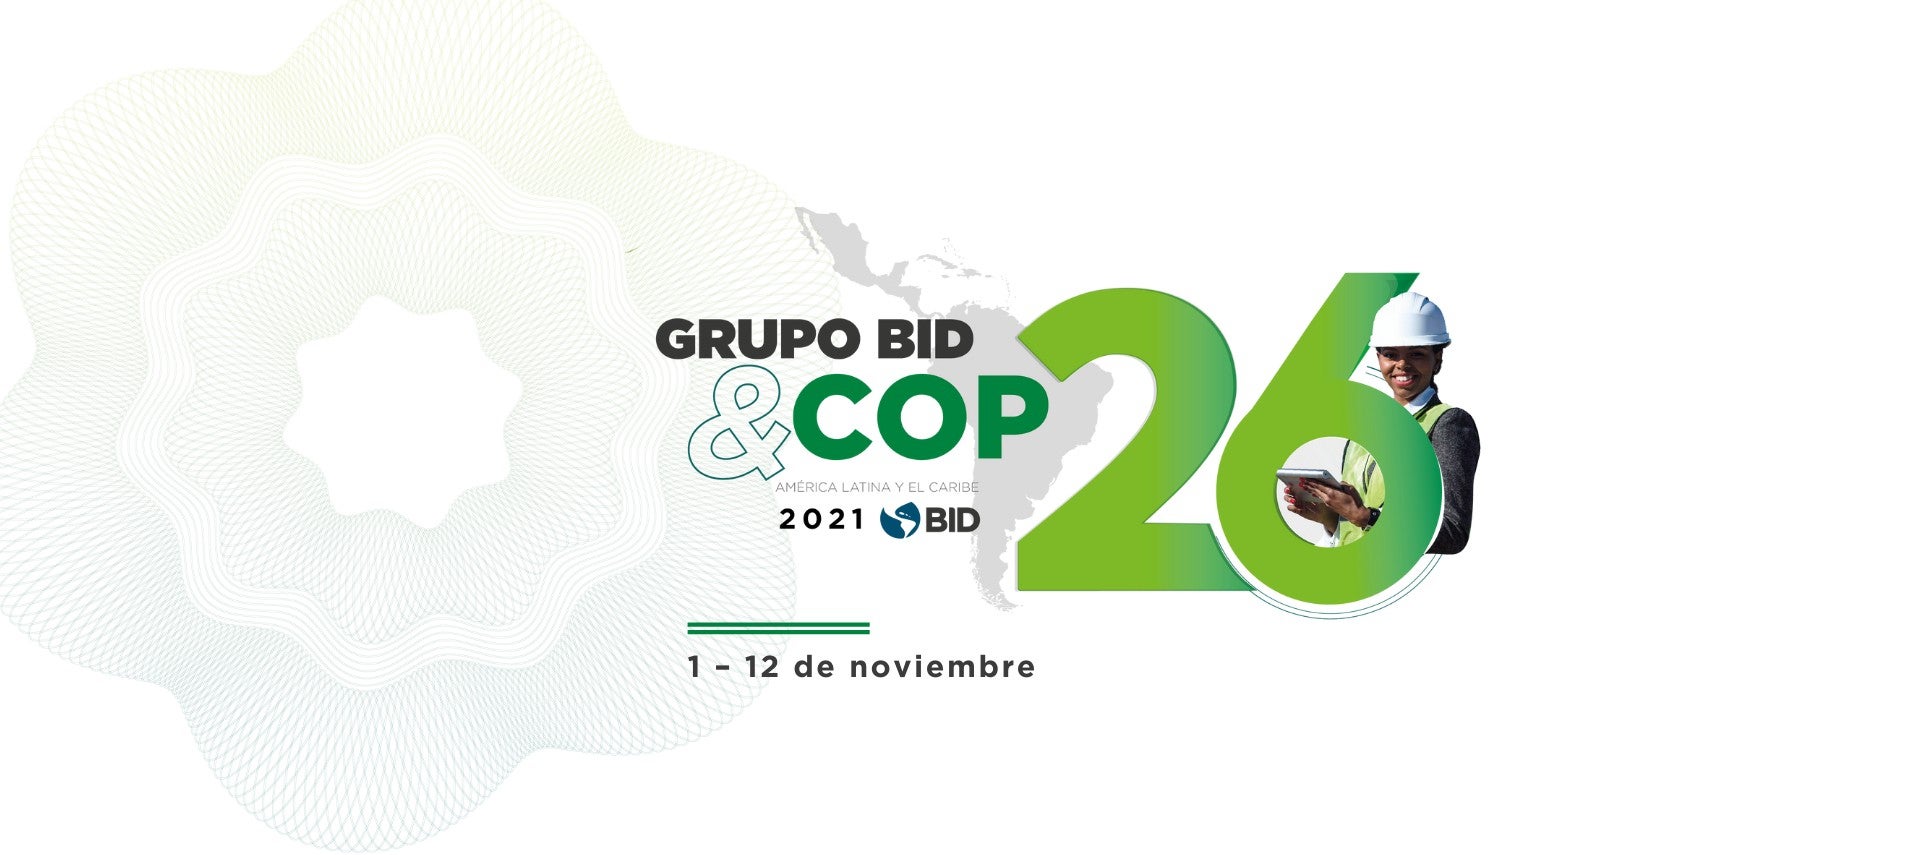 Conoce más sobre el liderazgo del Grupo BID en la COP26